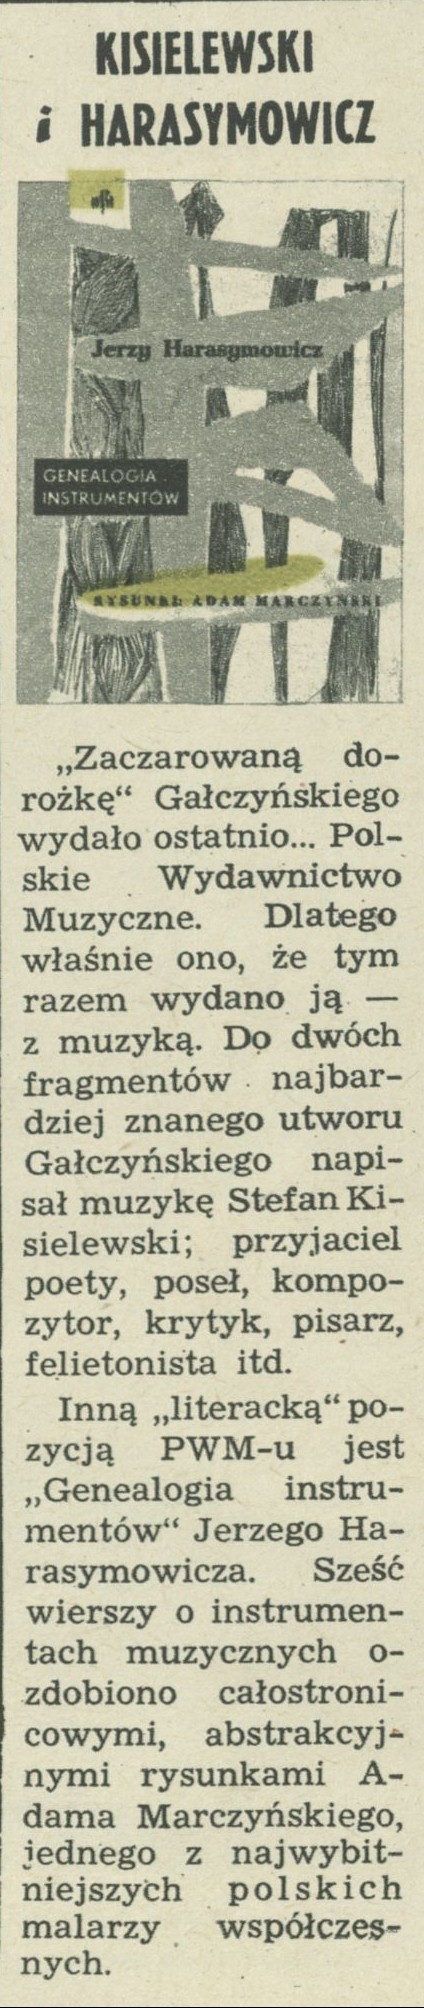 Kisielewski i Harasymowicz